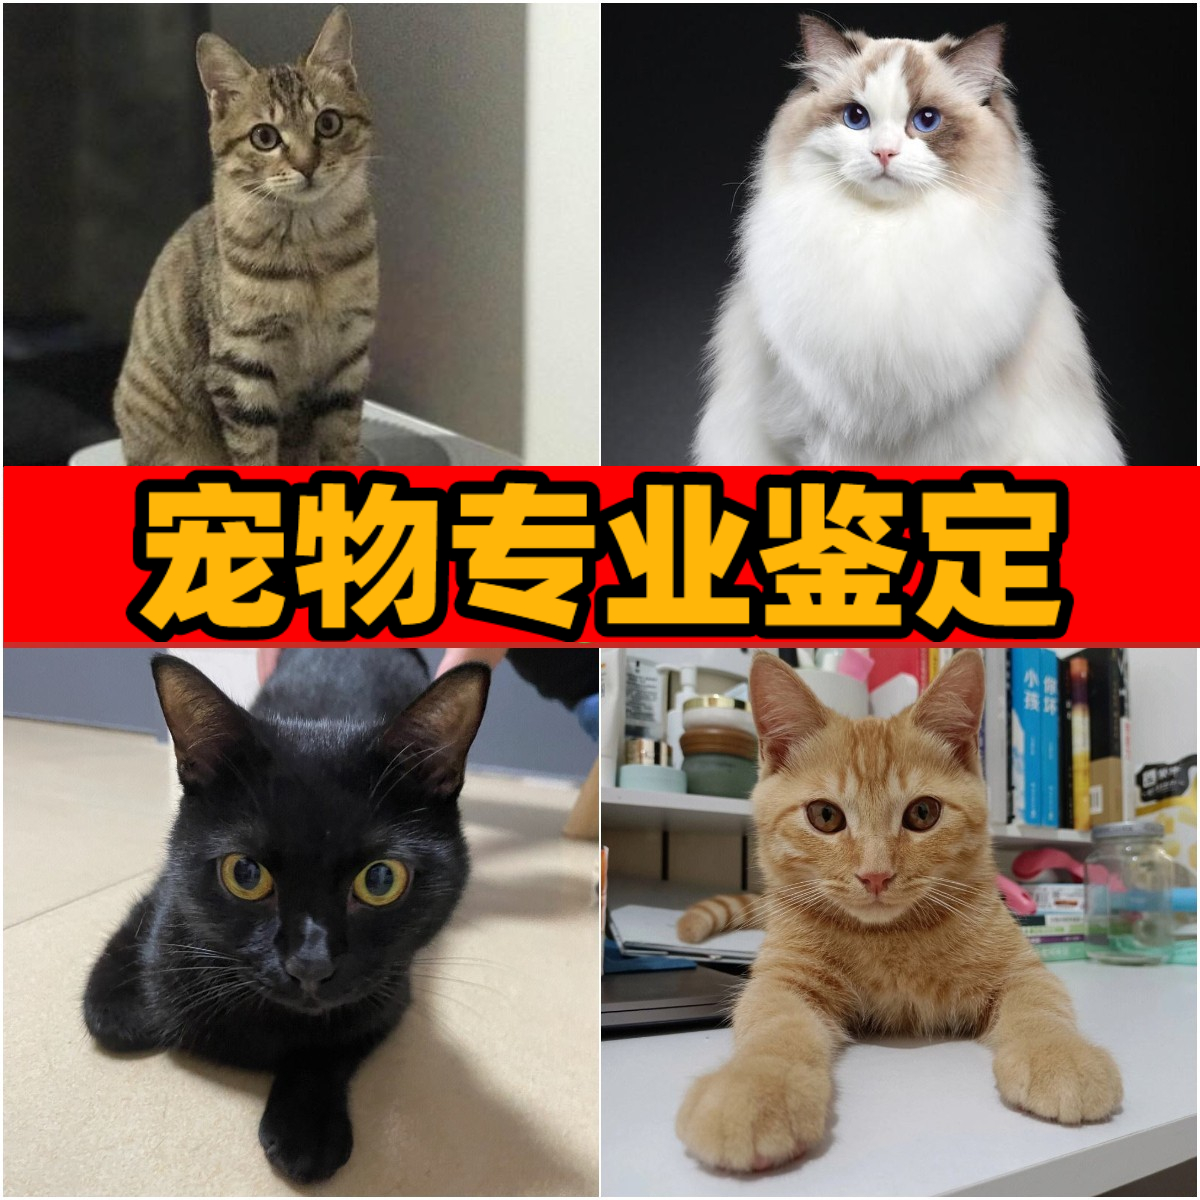 宠物猫咪中华田园猫品相性别年龄鉴定橘猫狸花猫布偶猫品种专业